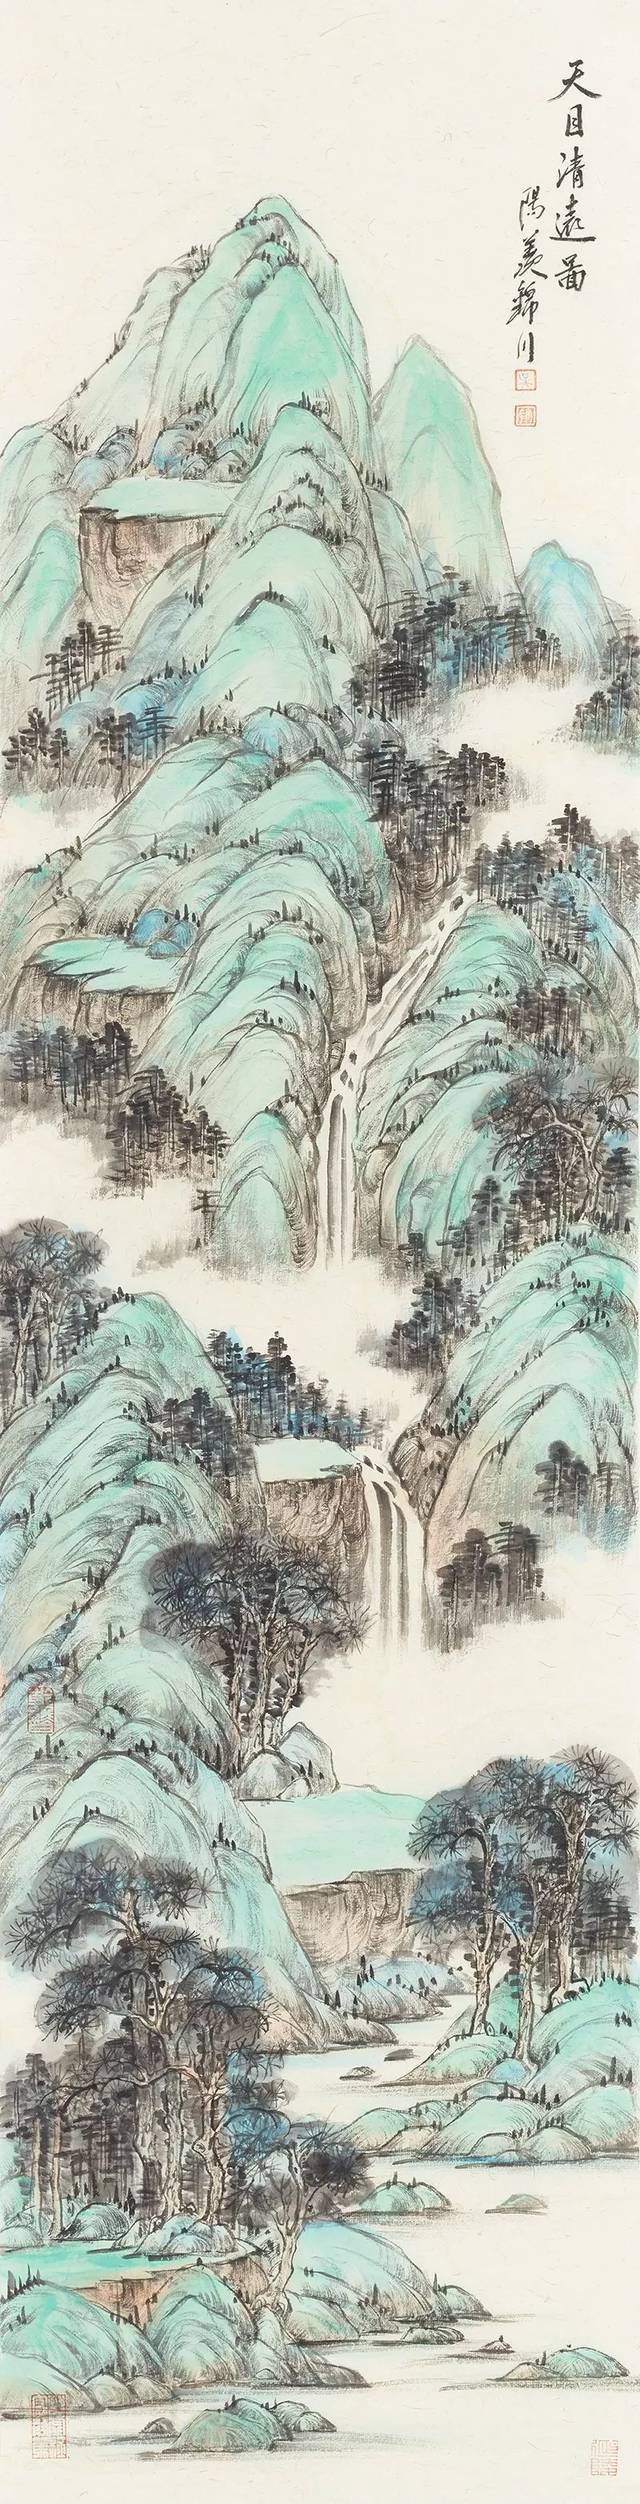 描绘,你心中的绿水青山美丽中国画卷